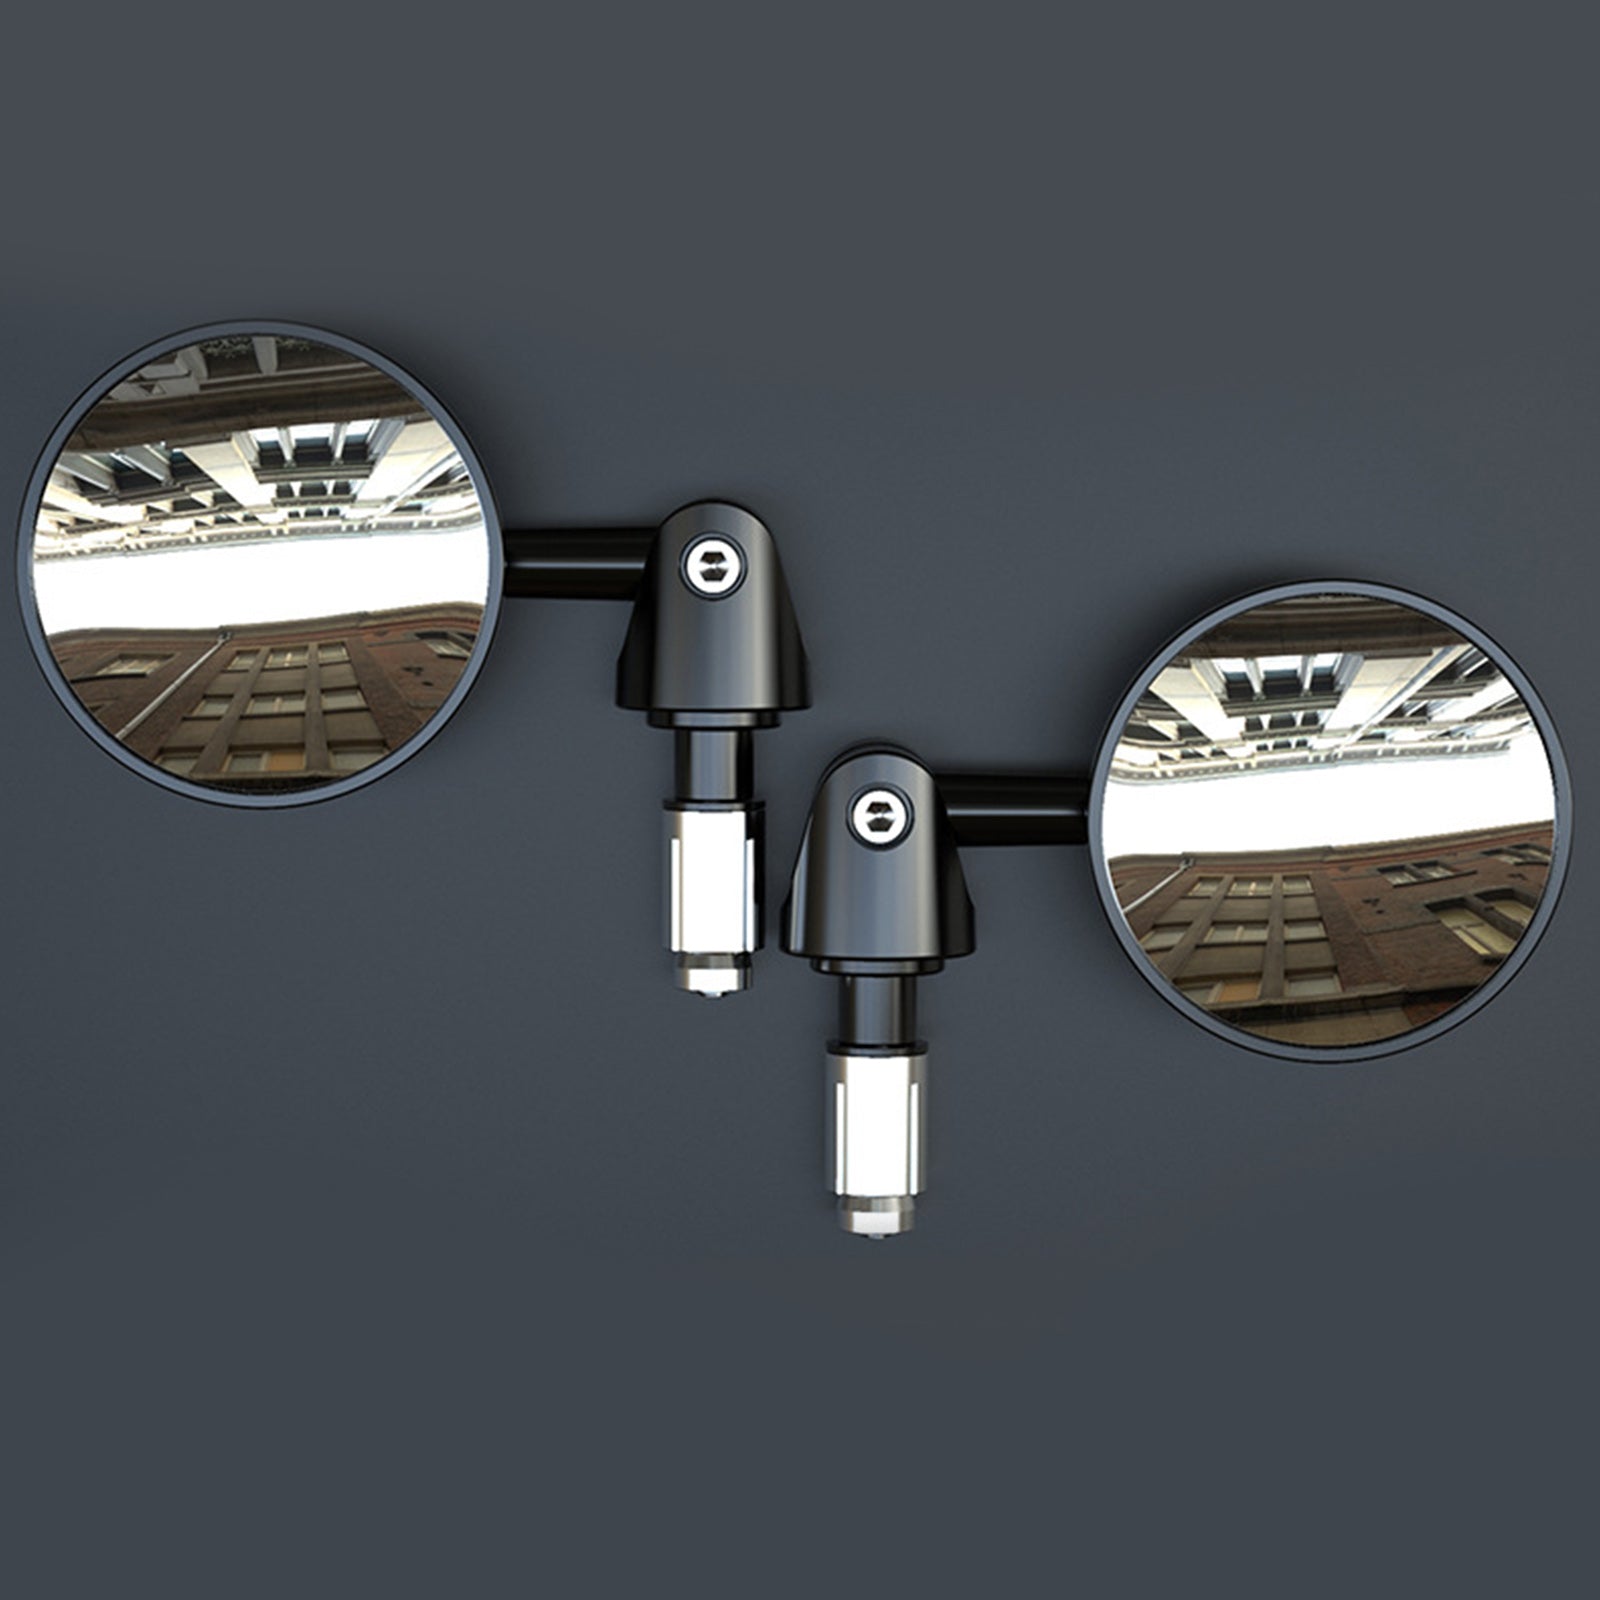 Specchietti retrovisori manubrio regolabili da 22 mm neri Specchio CONVEX da 73 mm ID 16-18 mm Moto Generico